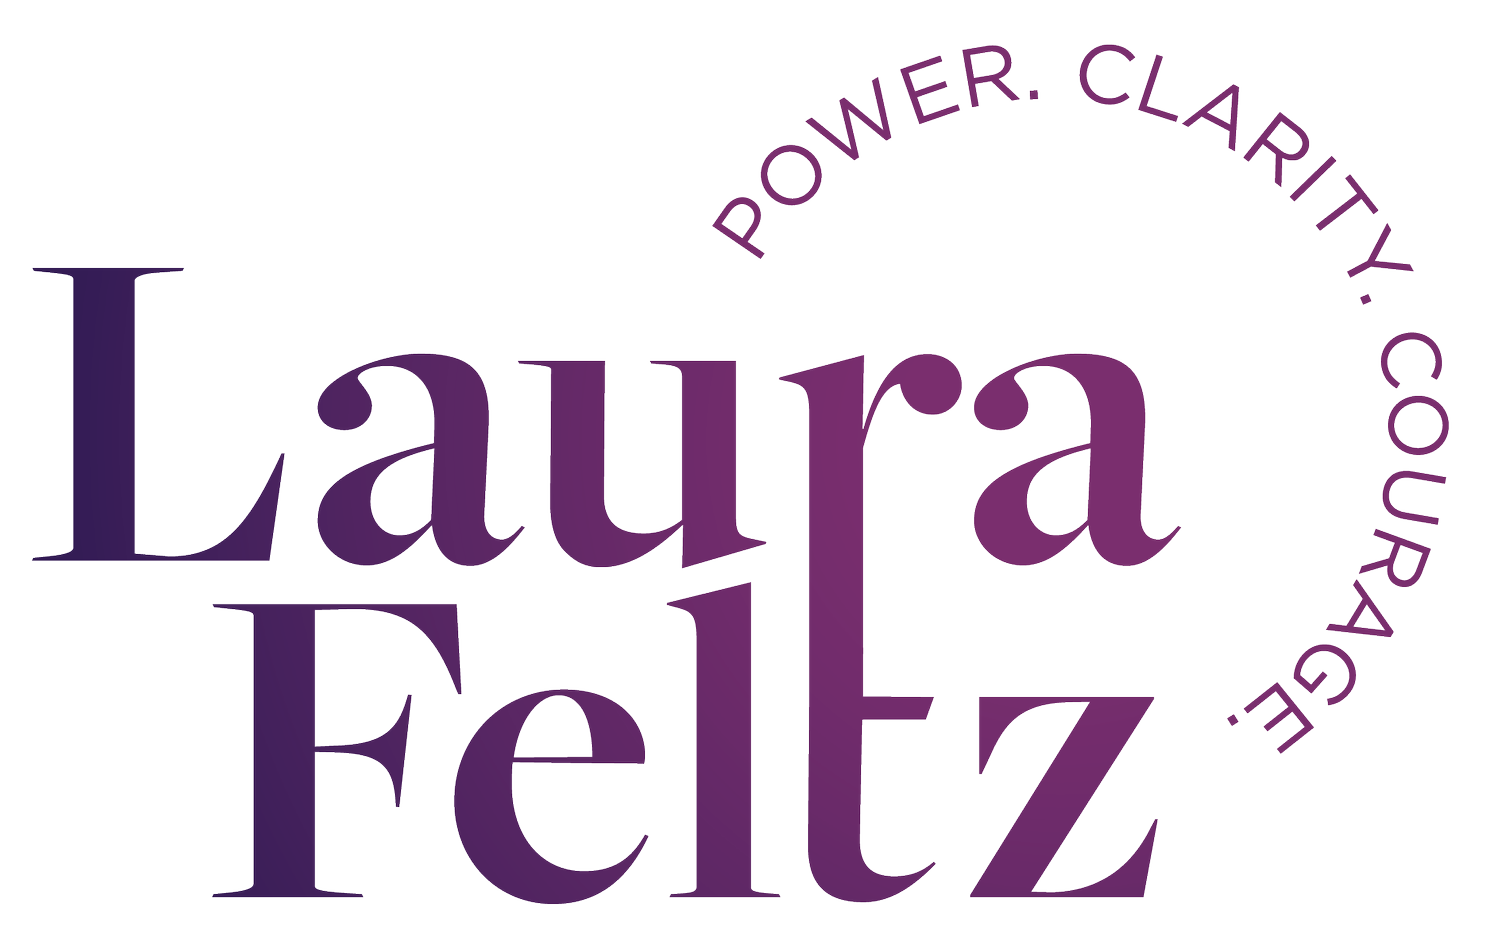 Laura Feltz